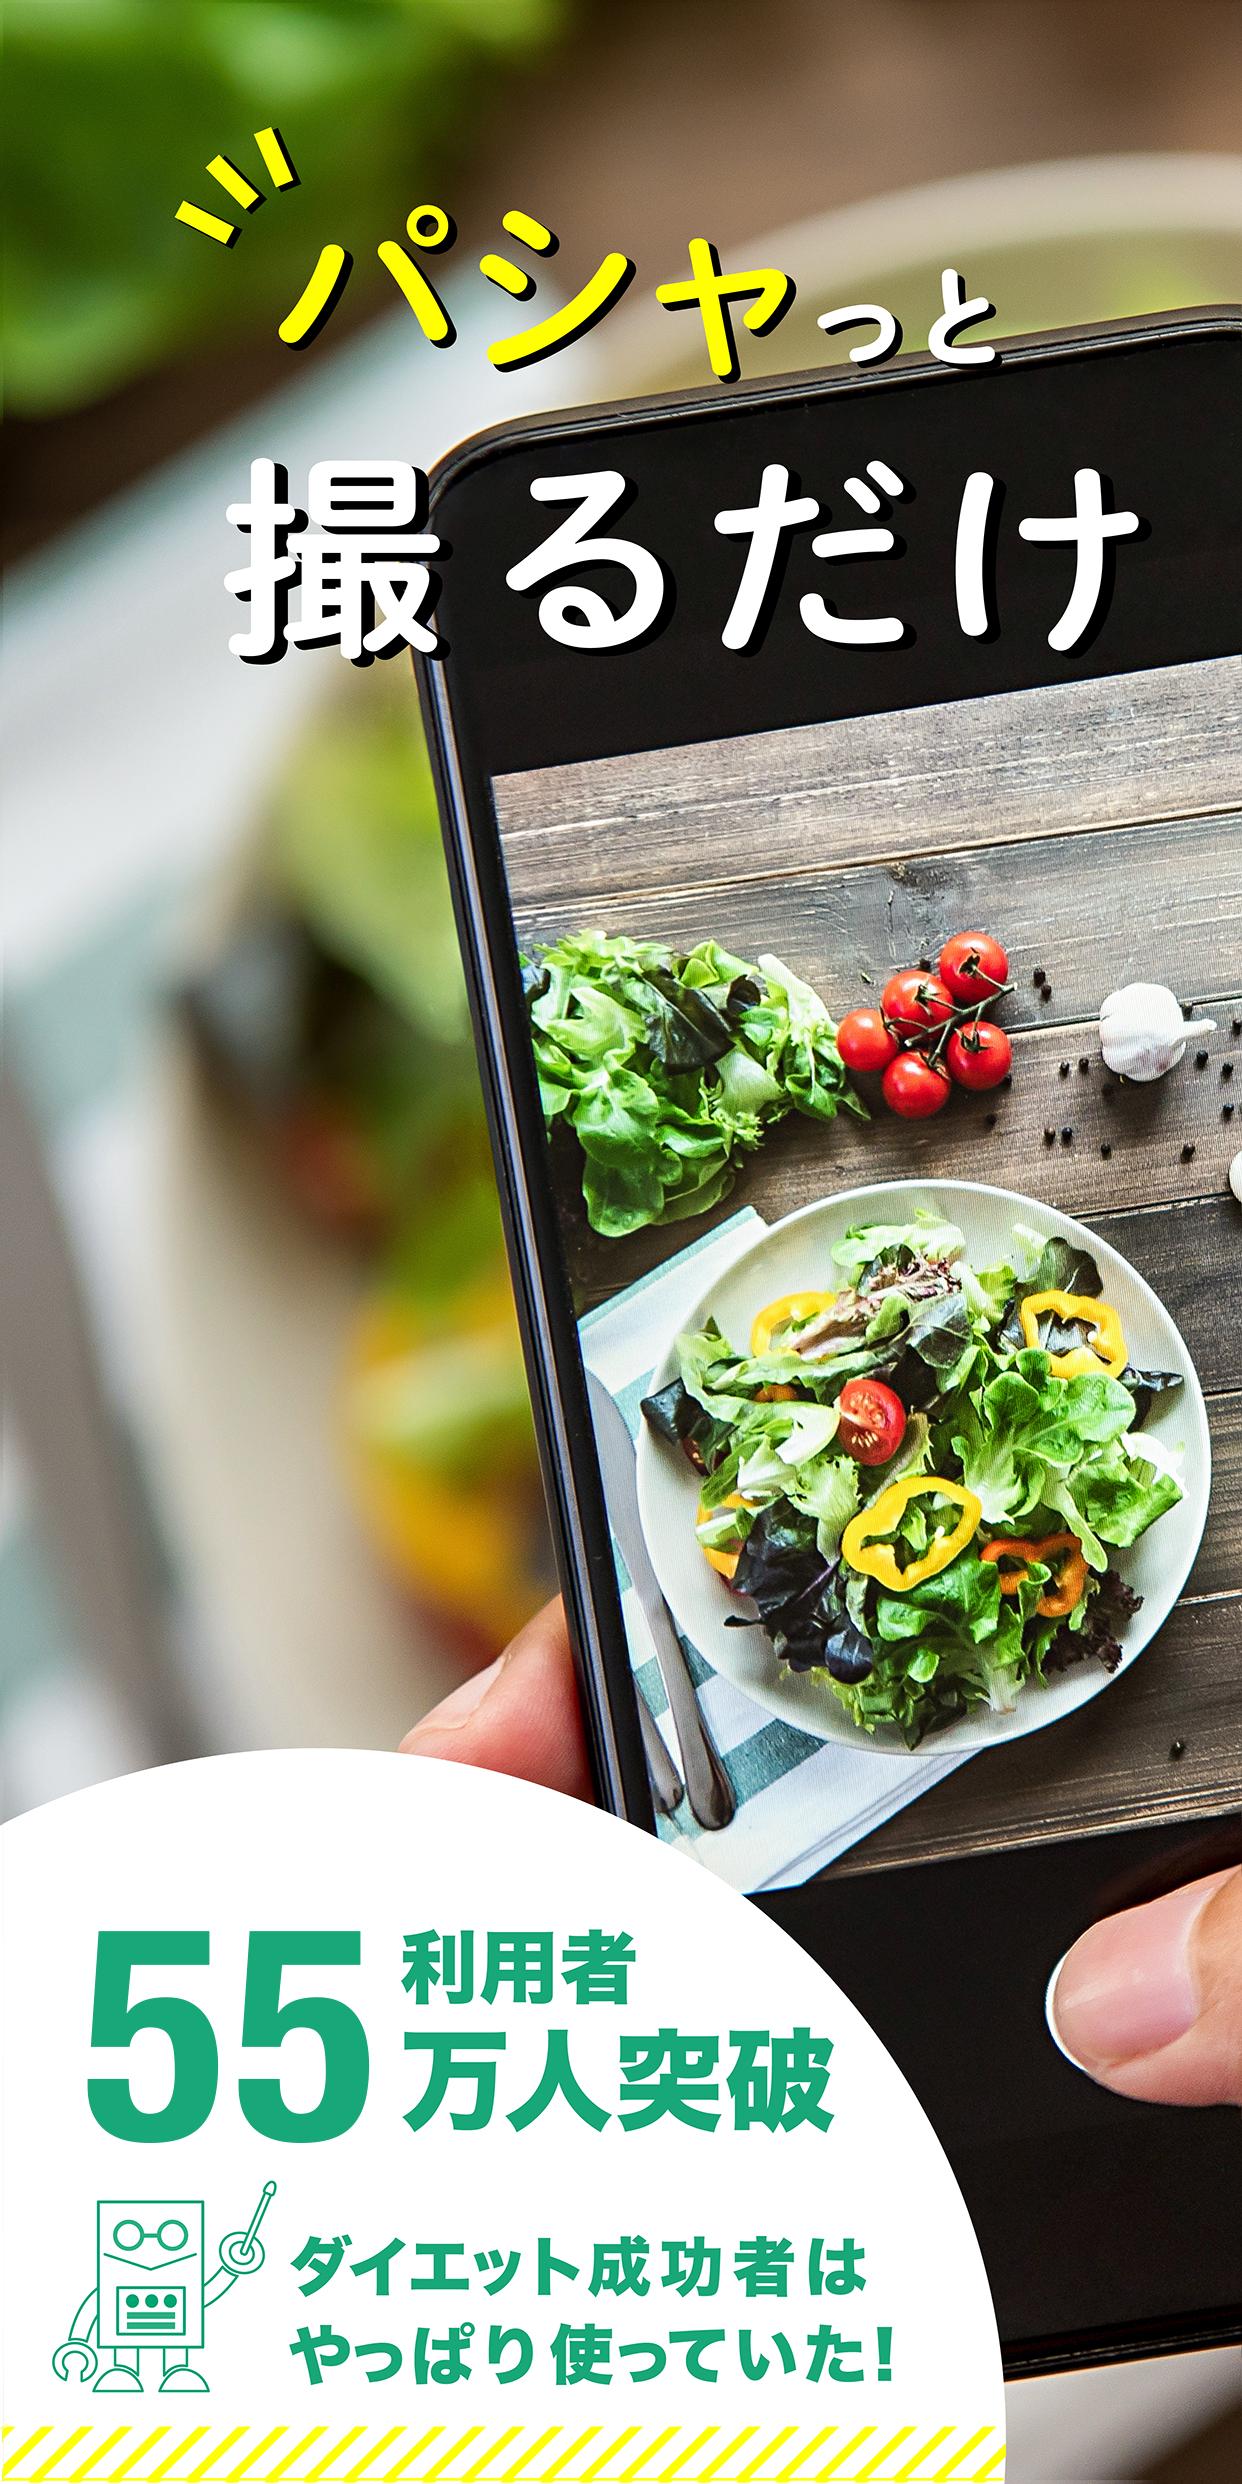 健康管理 糖質制限アプリ 簡単に体重 食事 運動を記録できるダイエットサポートアプリ Dlya Android Skachat Apk